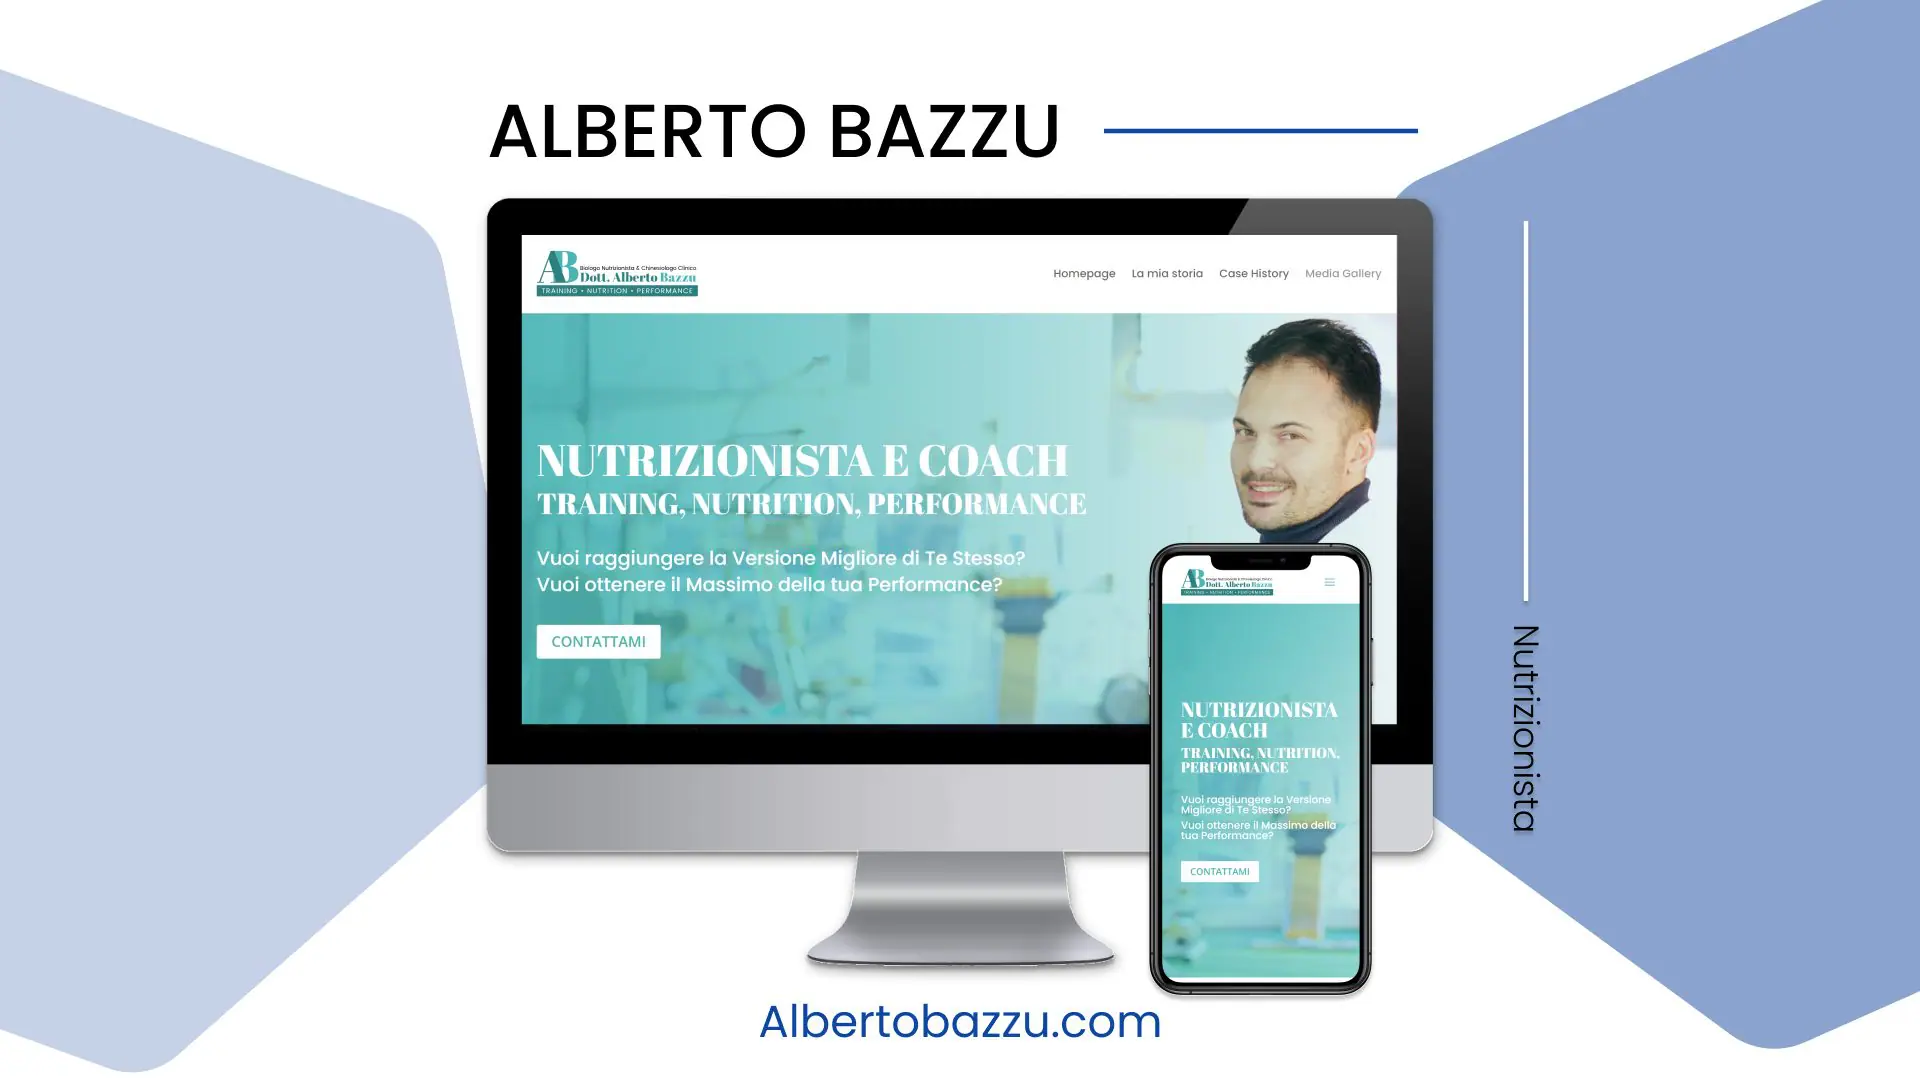 Alberto Bazzu